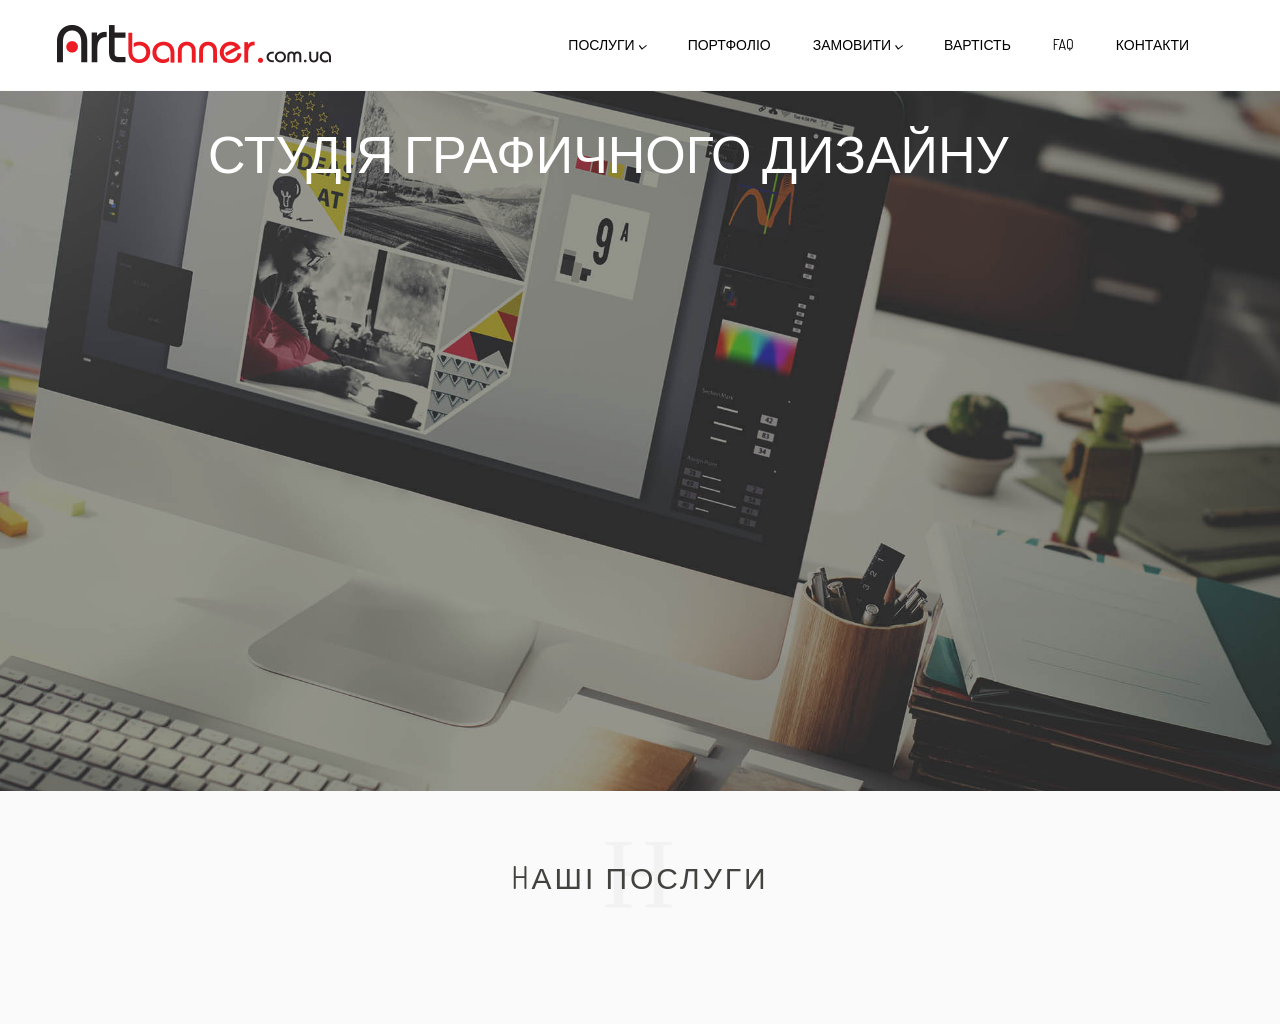 artbanner.com.ua